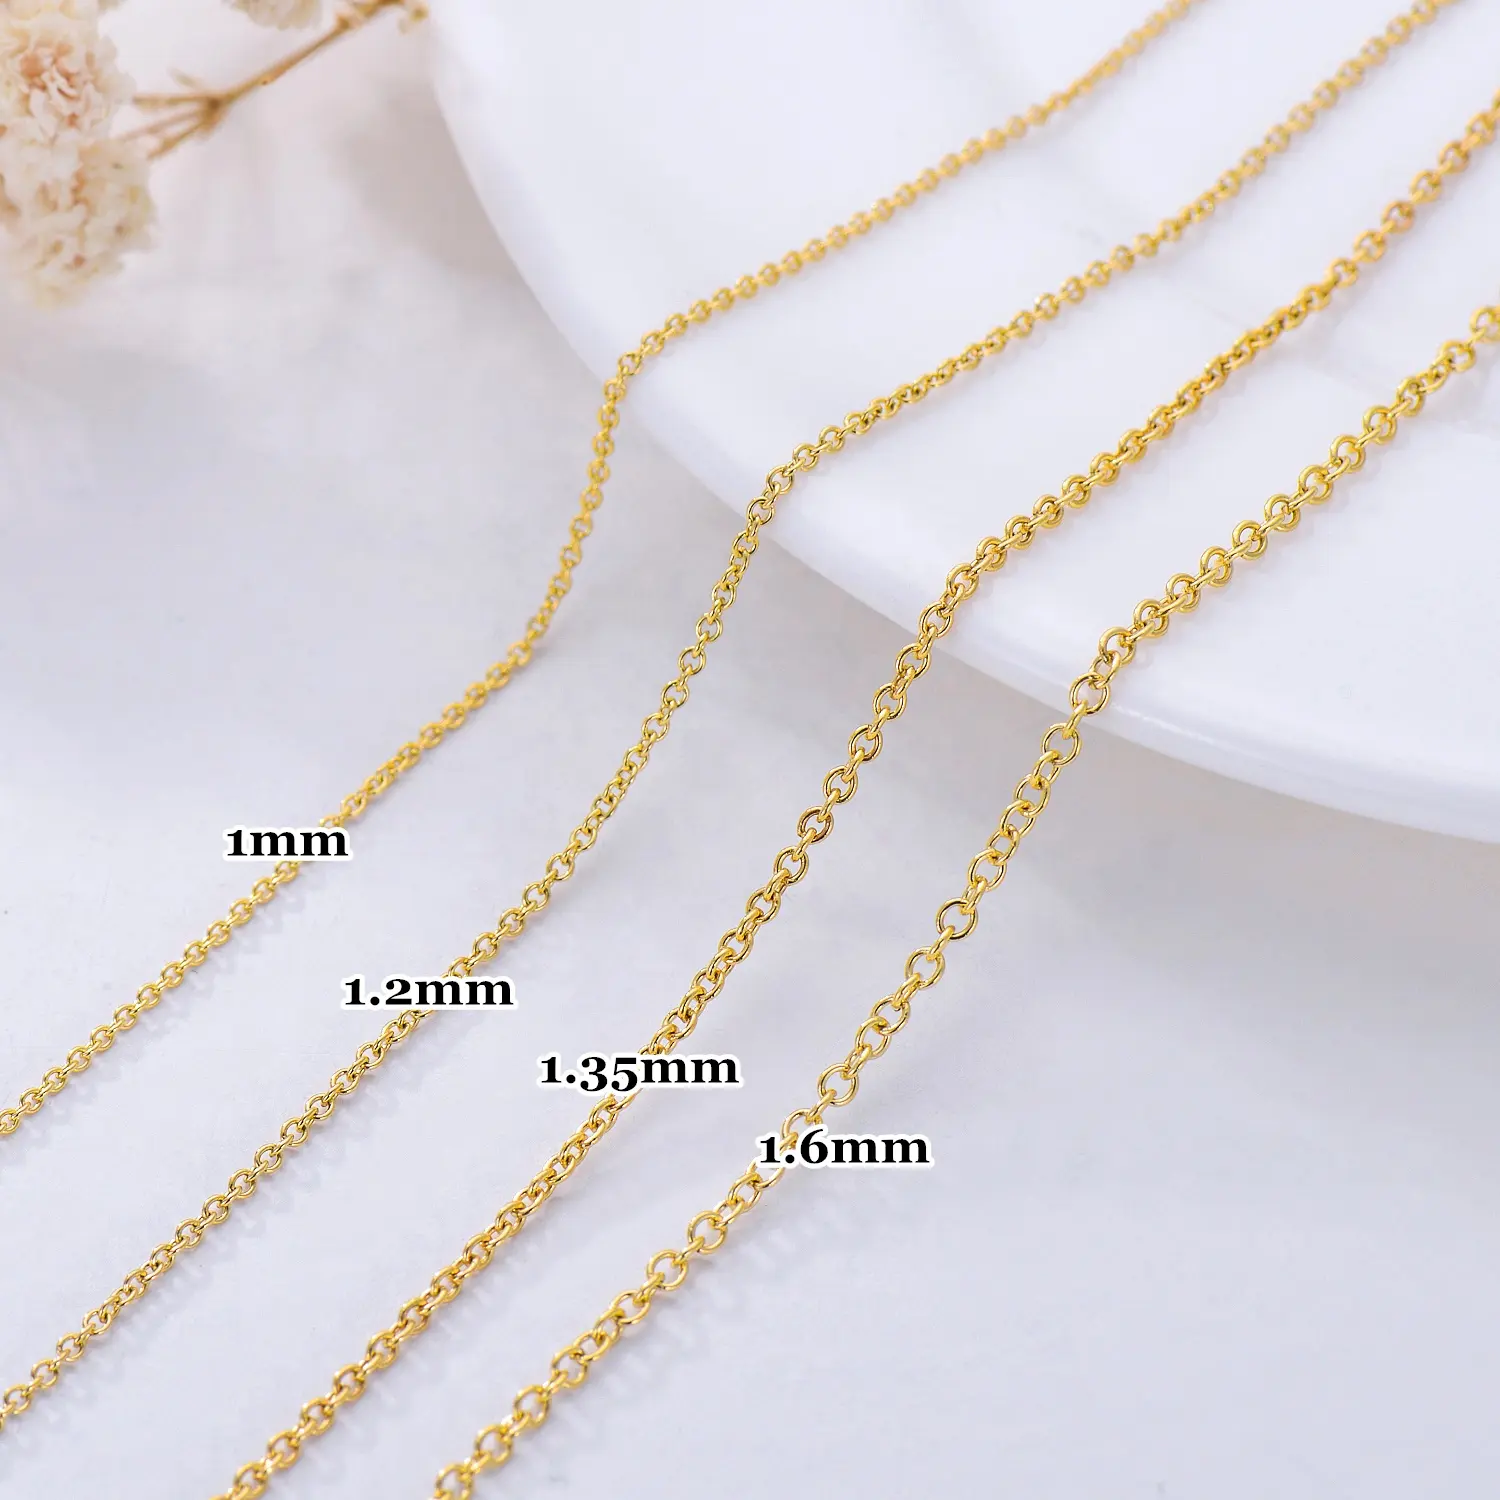 Цепочка под золото 14 к, прочная цепочка с пружинной застежкой, ожерелье для изготовления ювелирных изделий, 1 мм, 1,2 мм, 1,35 мм, 1,6 мм